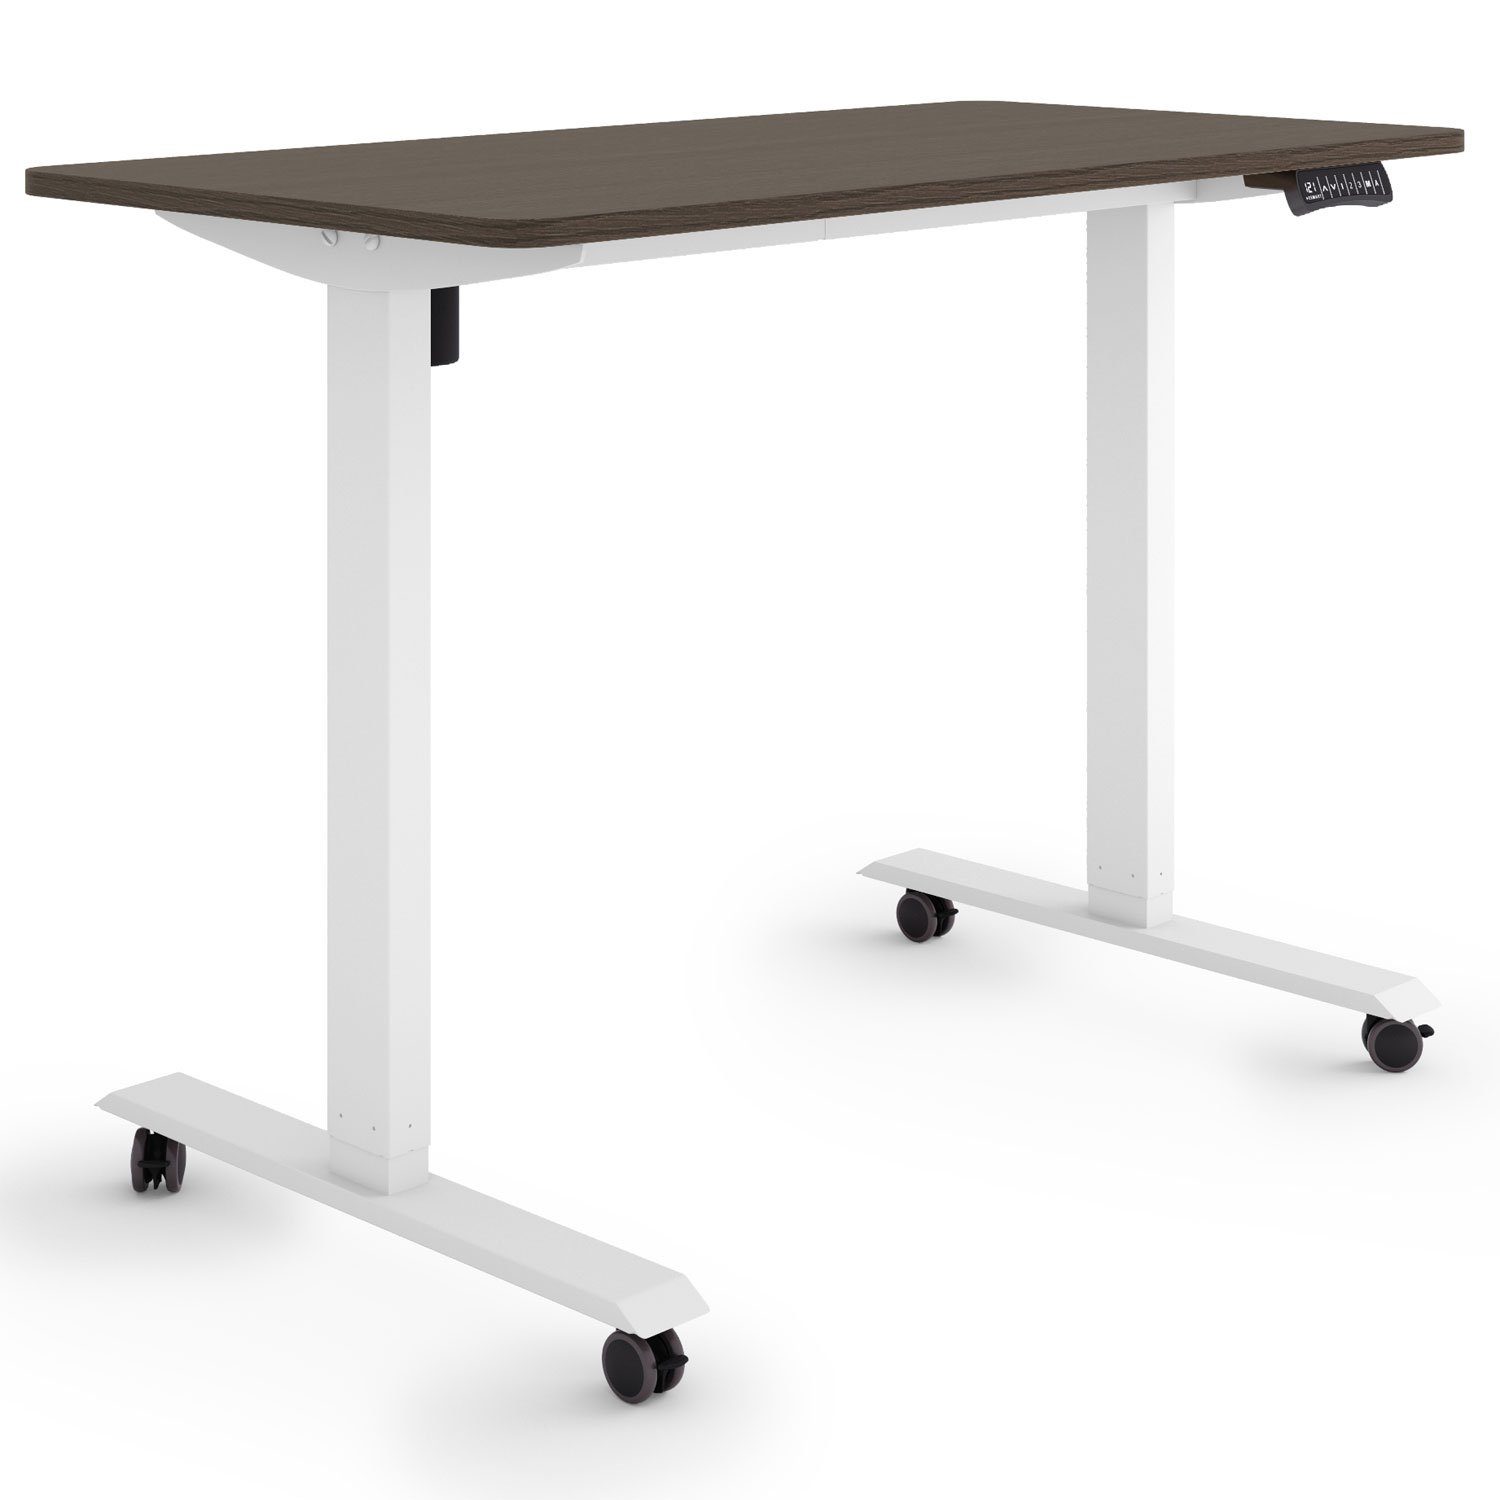 Rollen Tischplatte: Schreibtisch 120 Schreibtisch Ebenholz ETX-121 Weiß ESMART auf Germany, ESMART / höhenverstellbarer Rahmen: cm 60 x Elektrisch